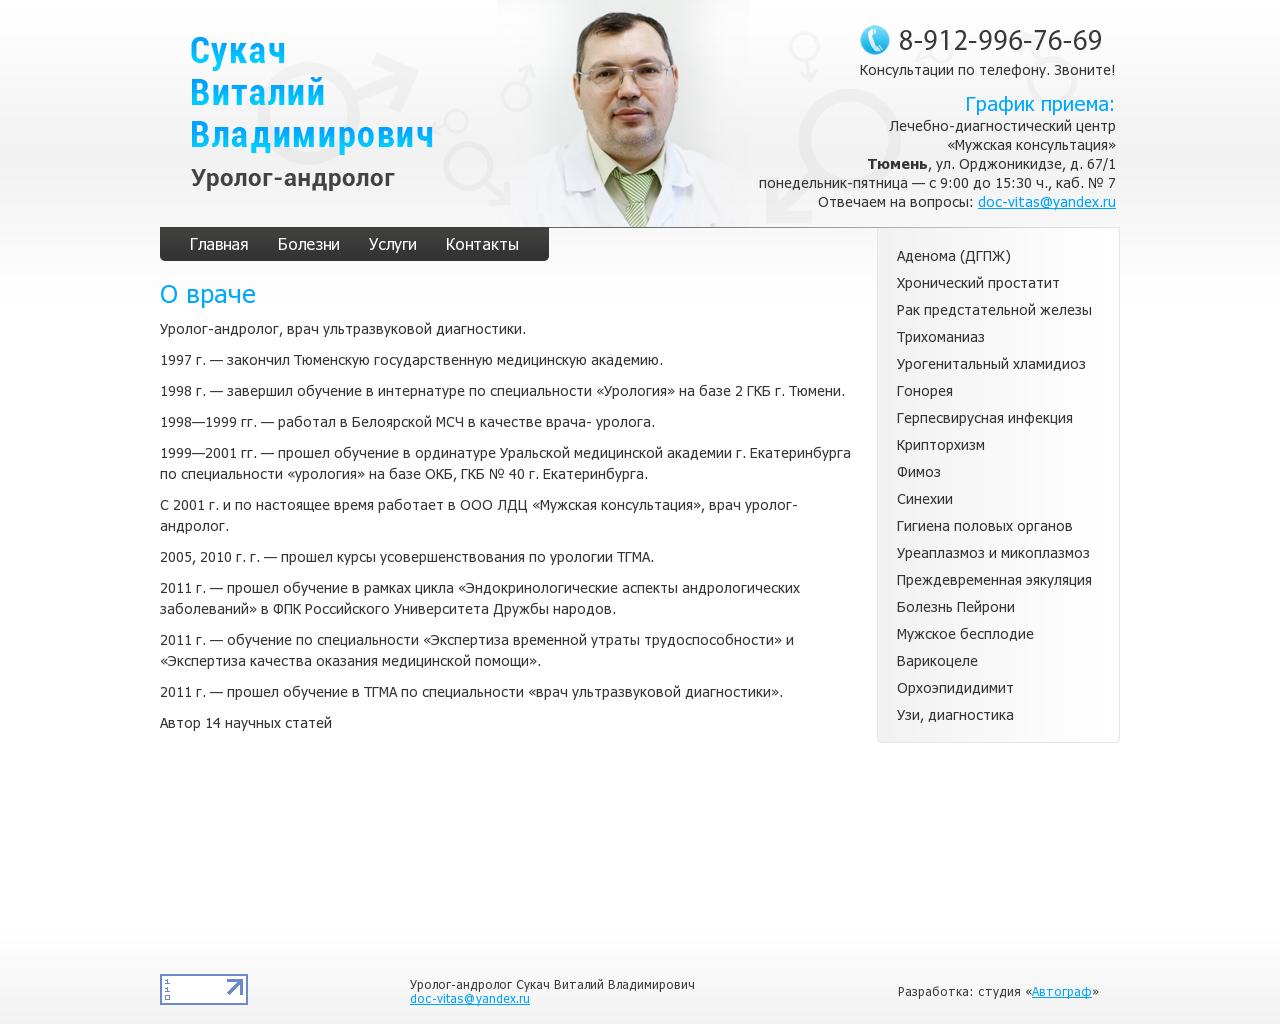 Изображение сайта uro72.ru в разрешении 1280x1024